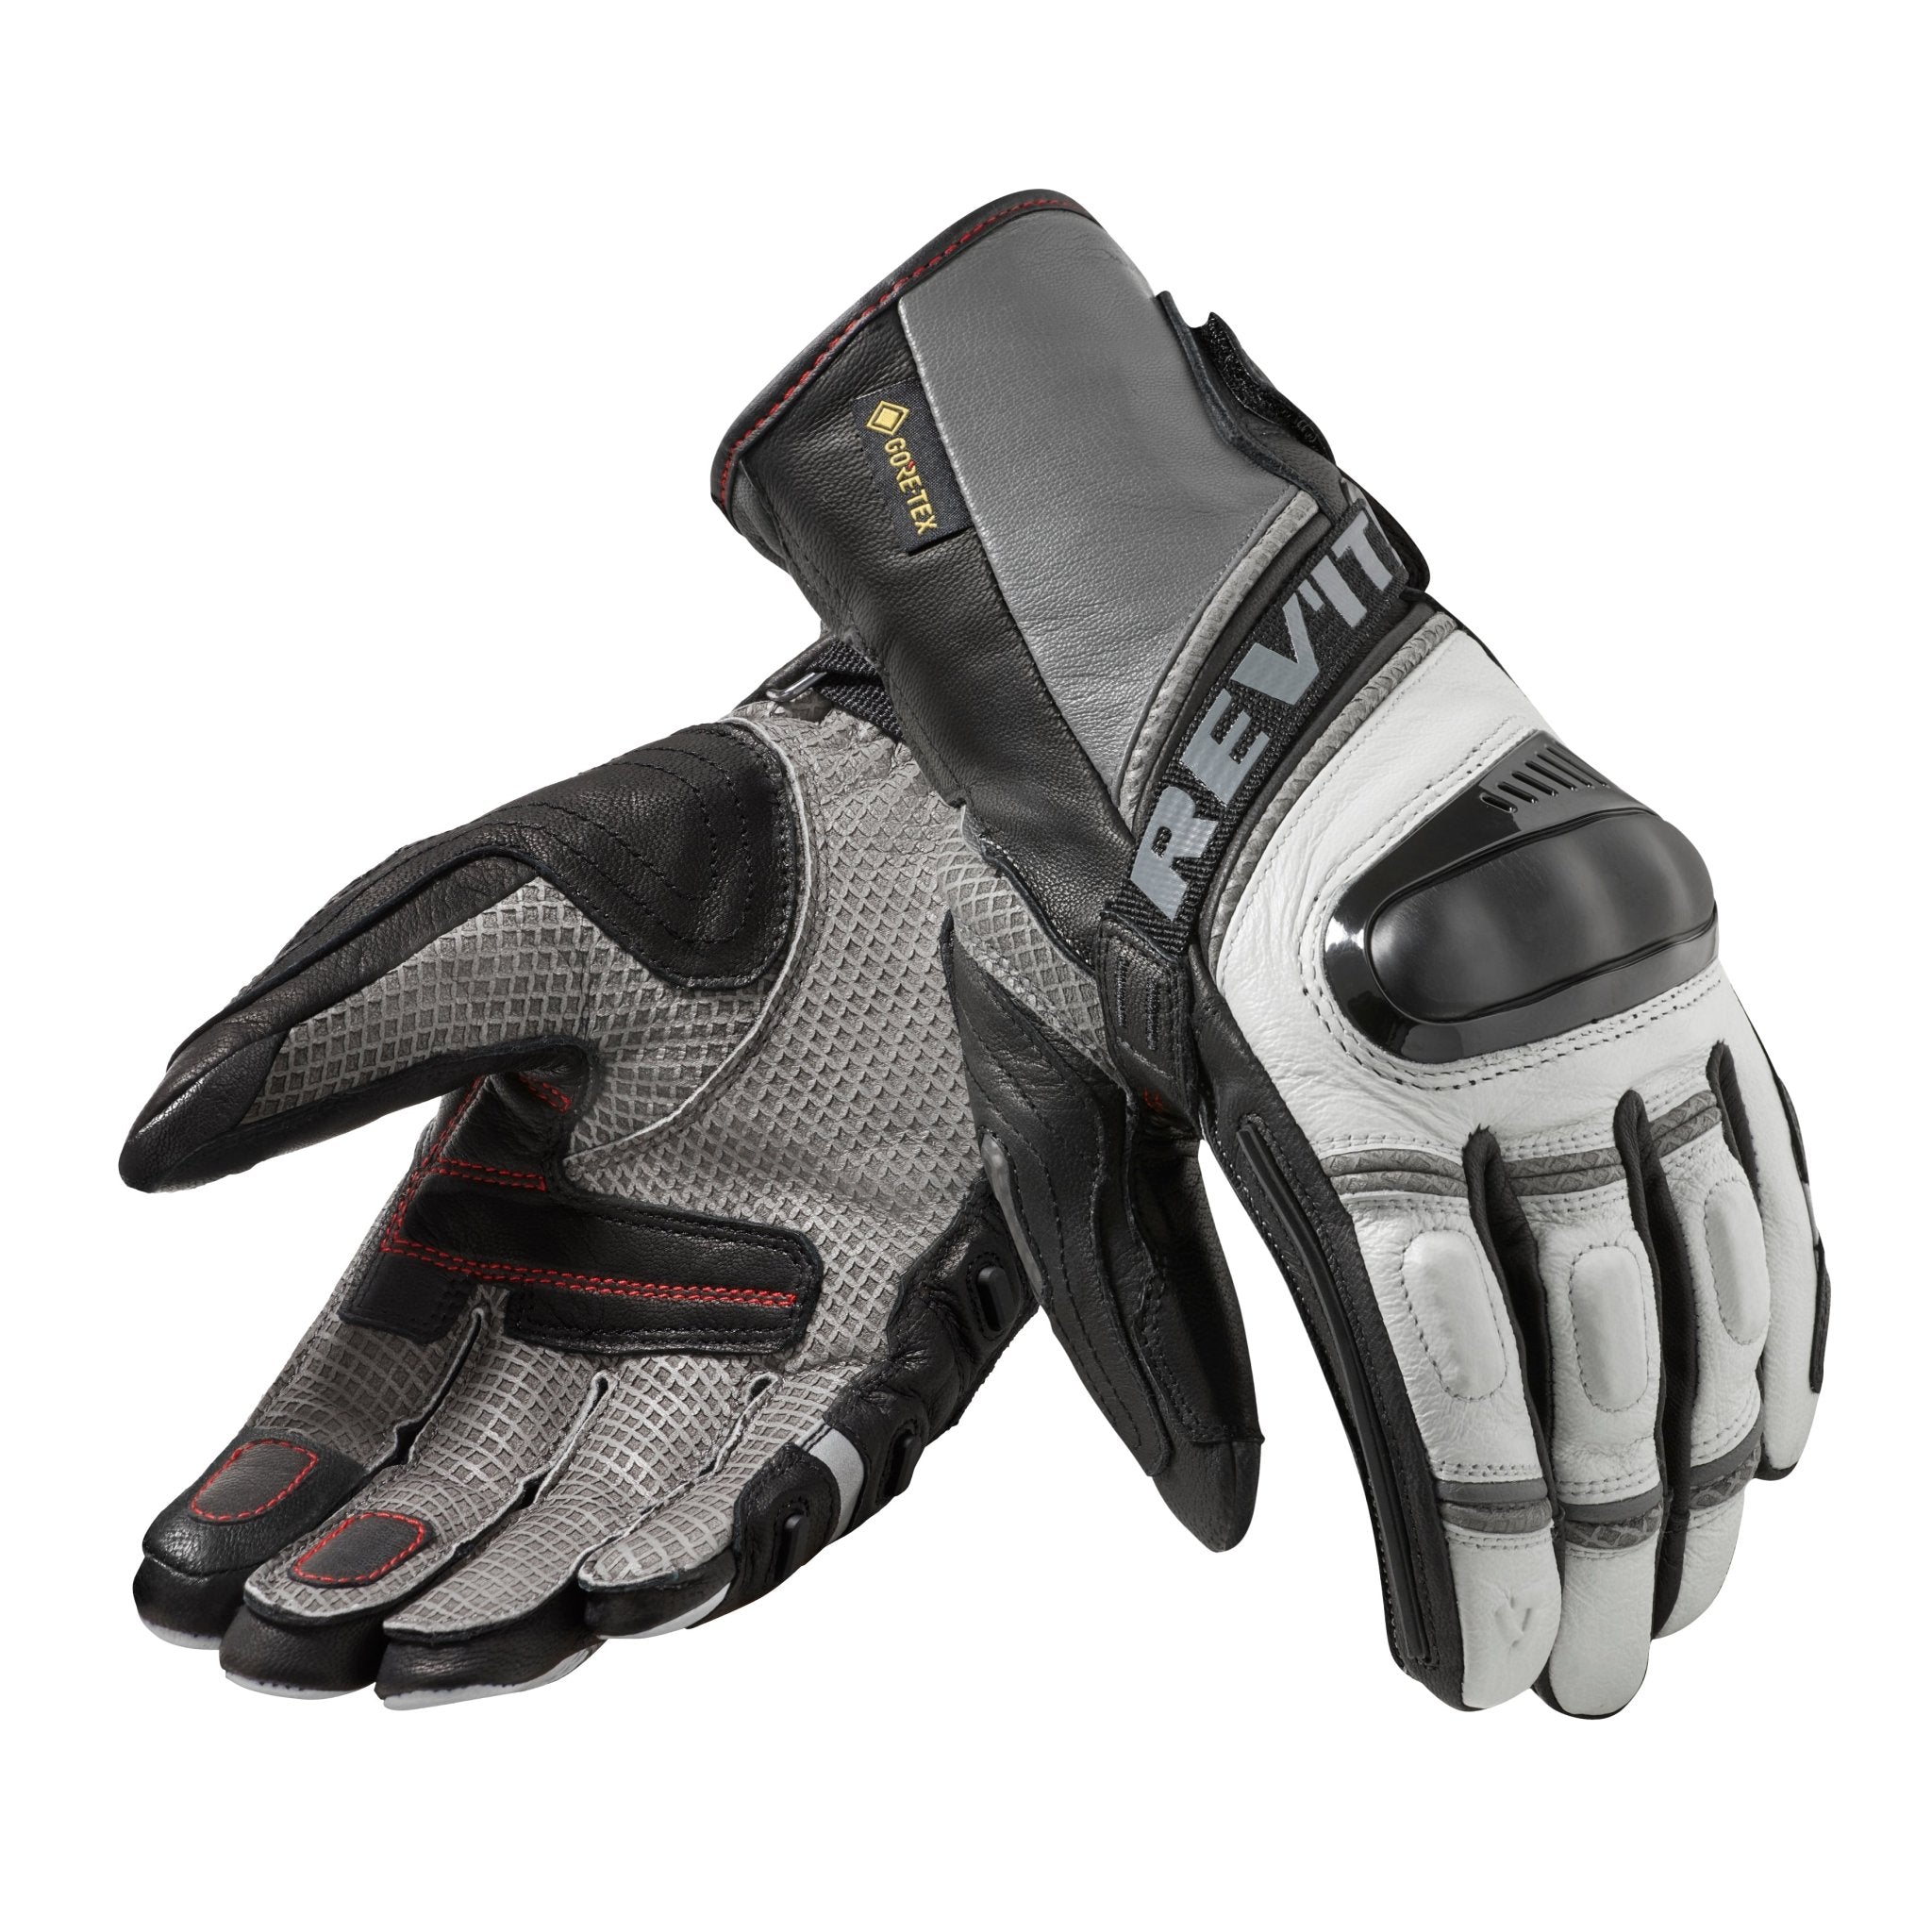 REV'IT! | Dominator 3 GTX Glove - Light Grey - Anthracite - Gloves - Peak Moto